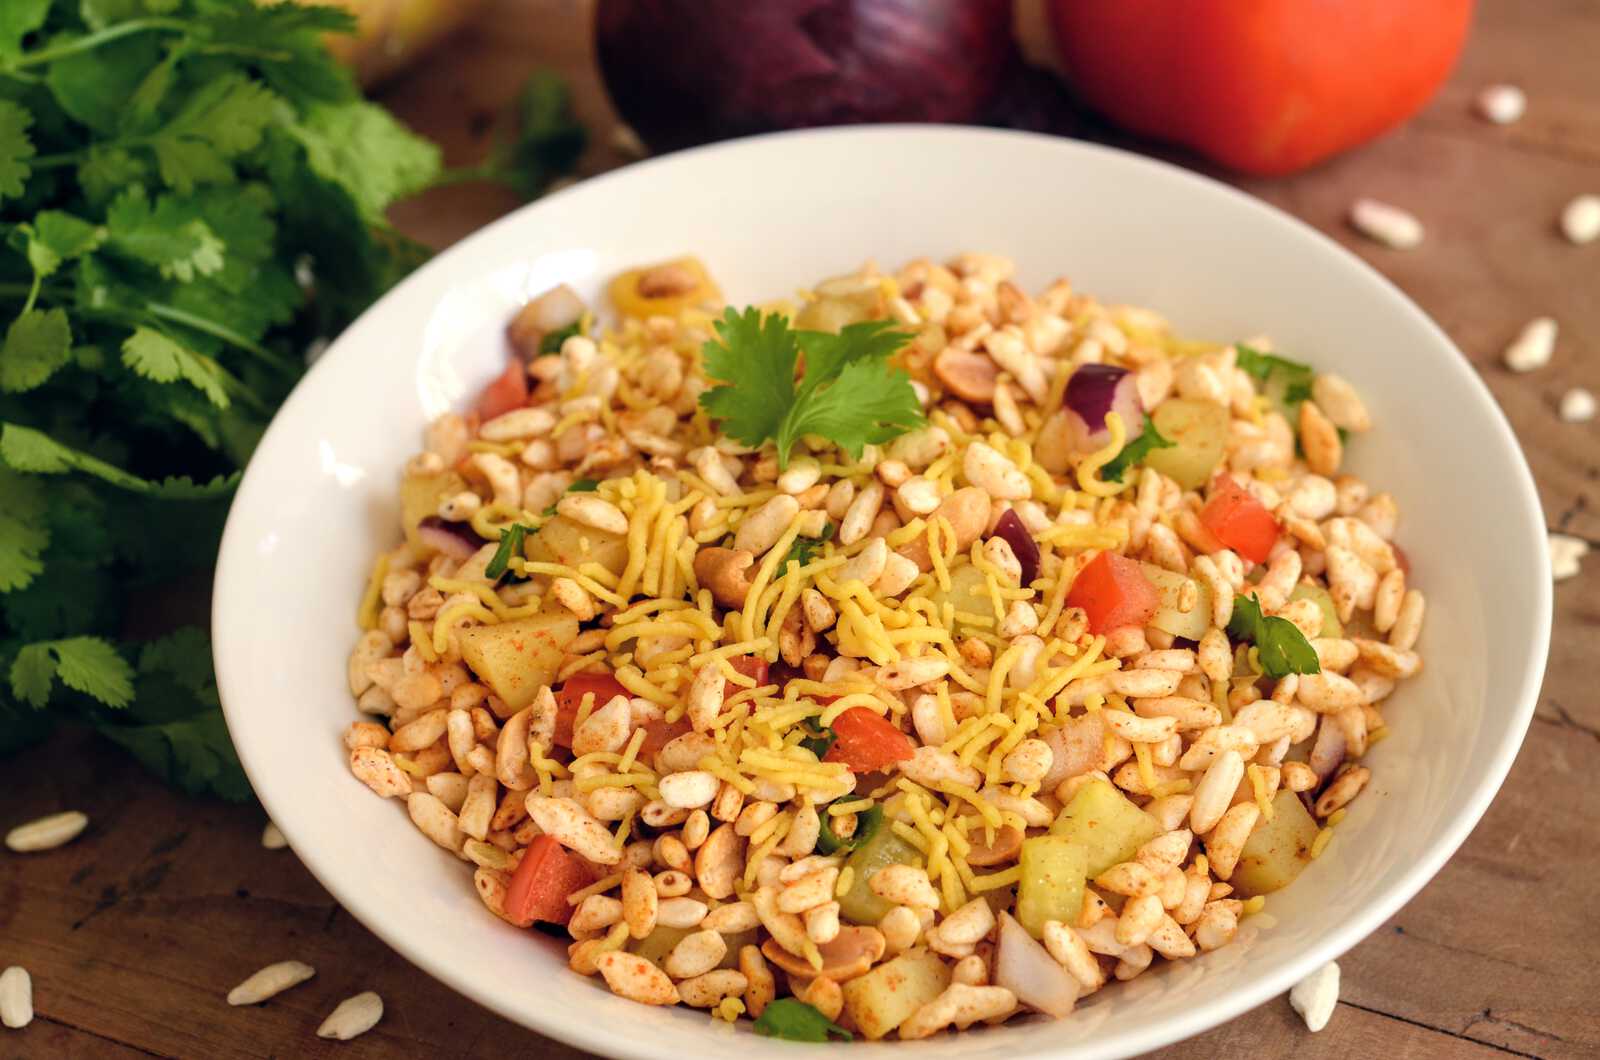 Jhal muri - Salade de riz soufflé épicée, snack de rue indien (recette  authentique)